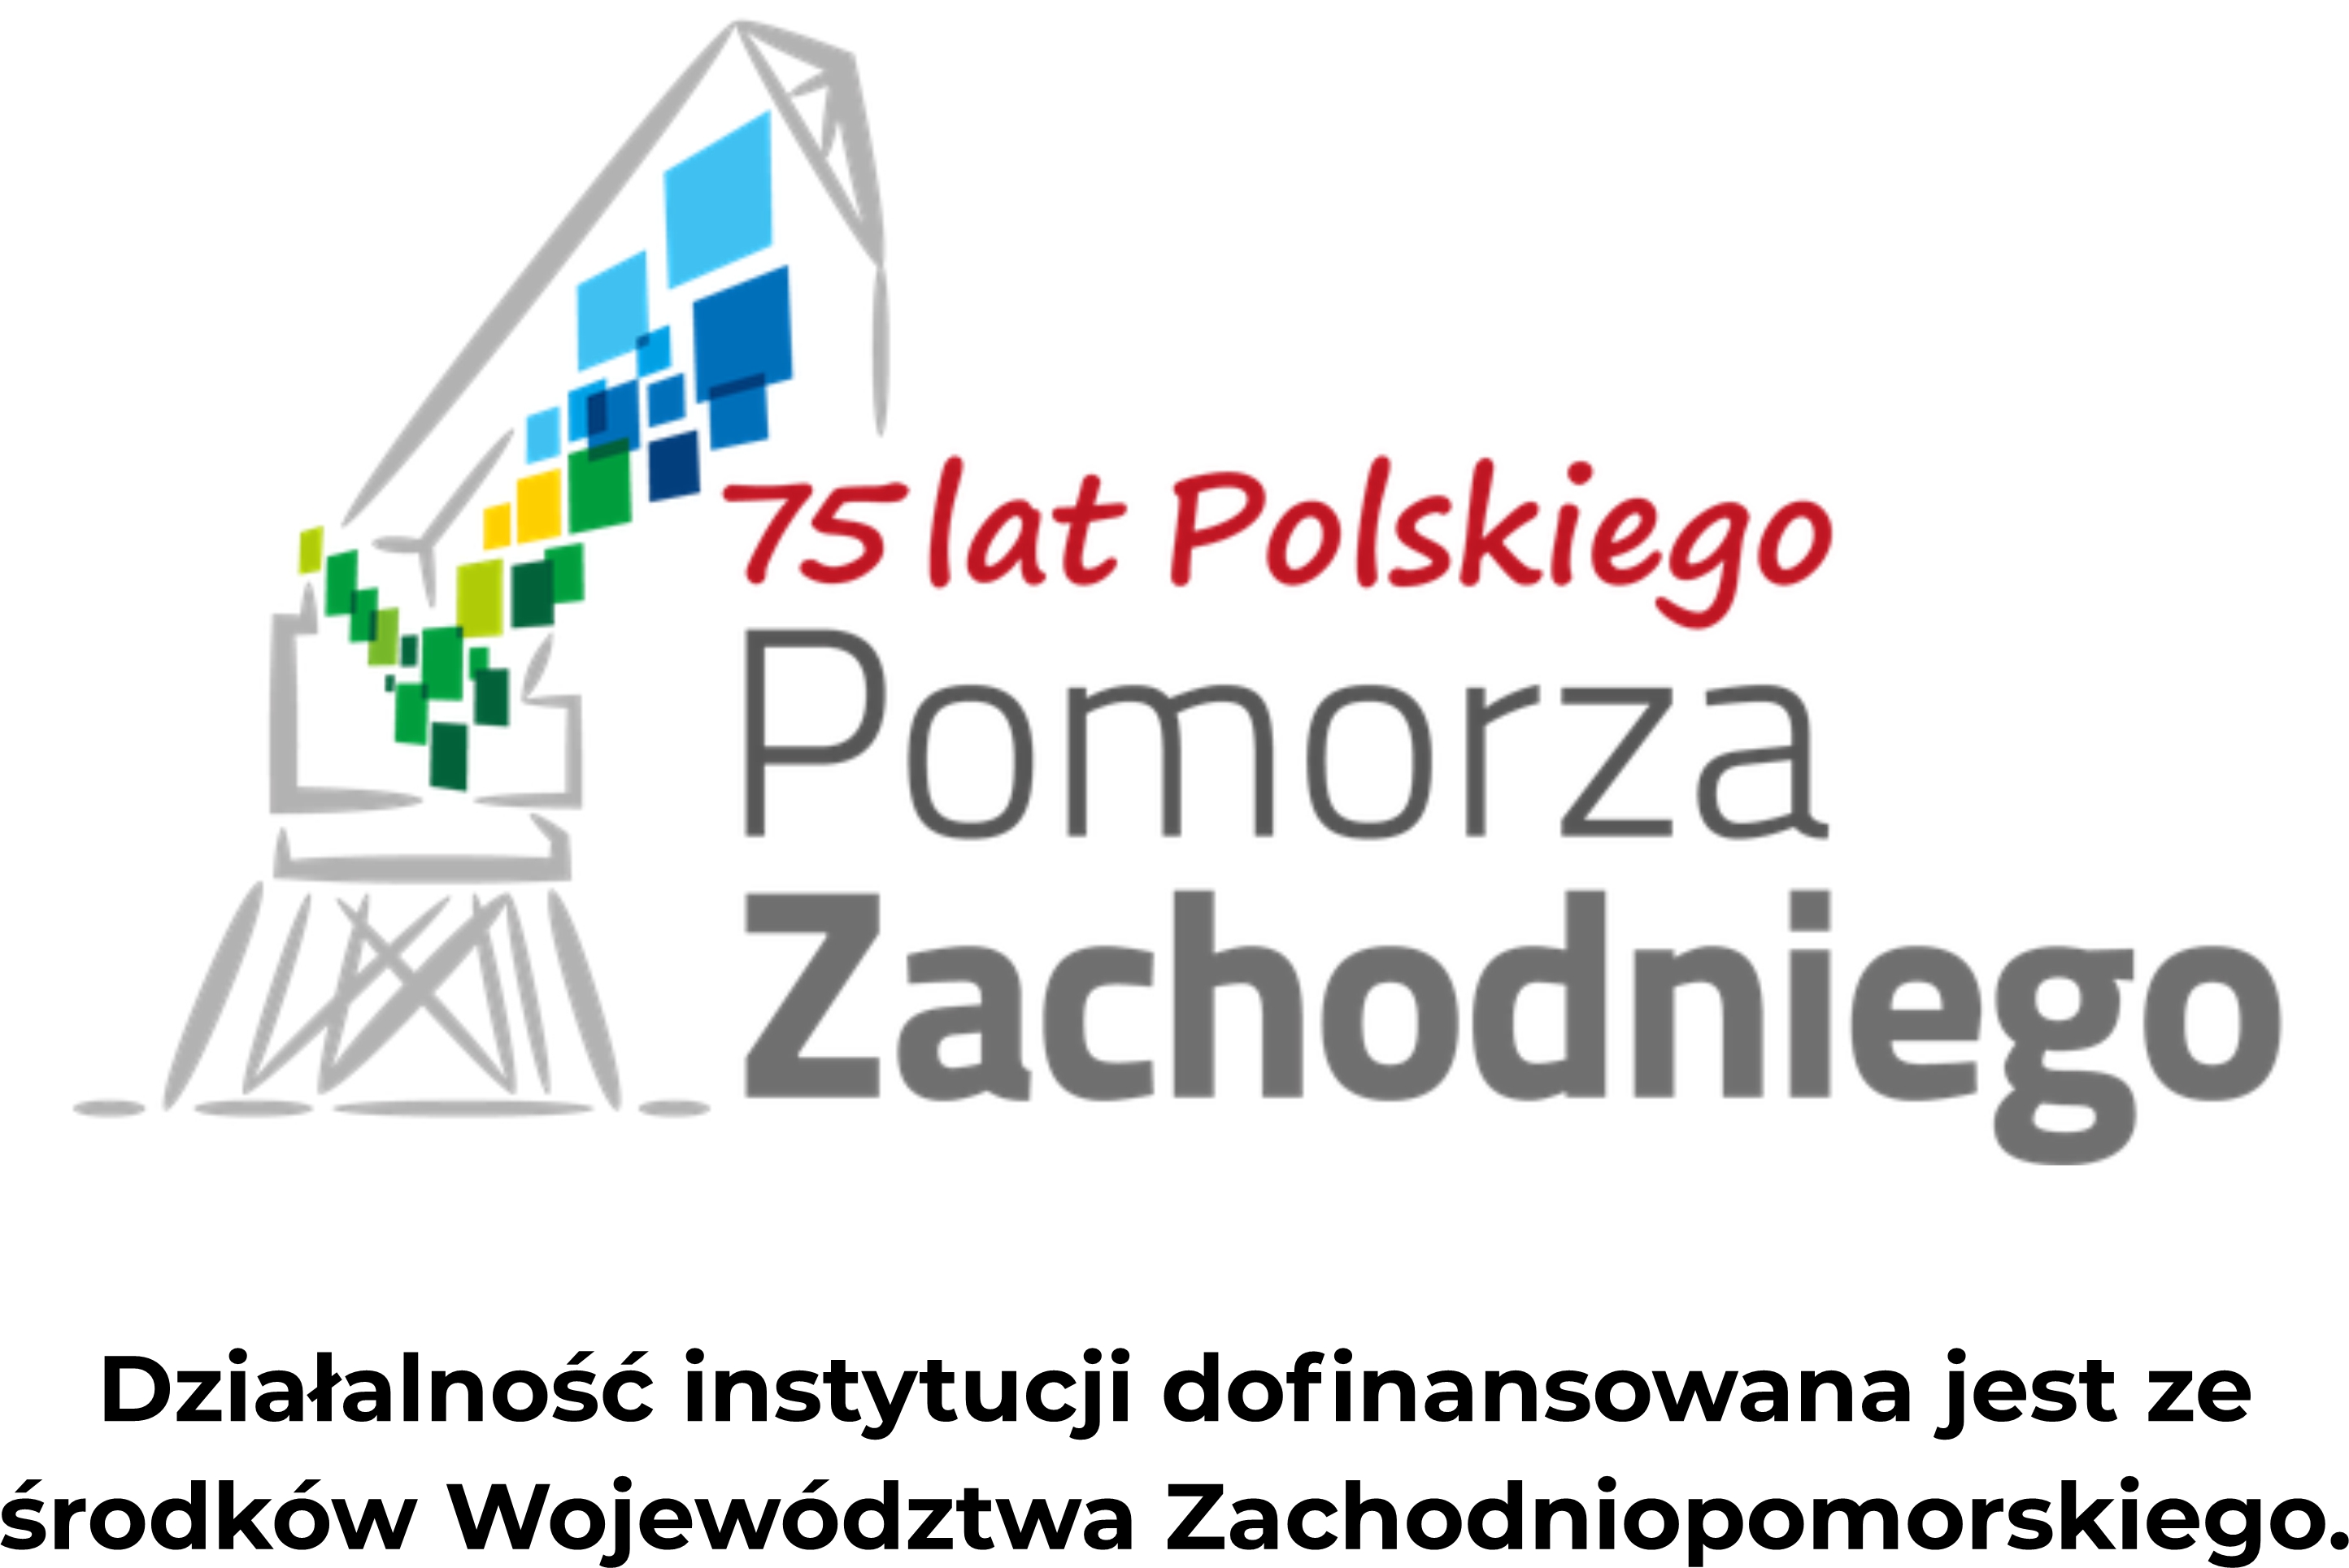 Obrazek przedstawia: logo Województwa Zachodniopomorskiego. Obrazek jest podlinkowany do strony http://wzp.pl/ 